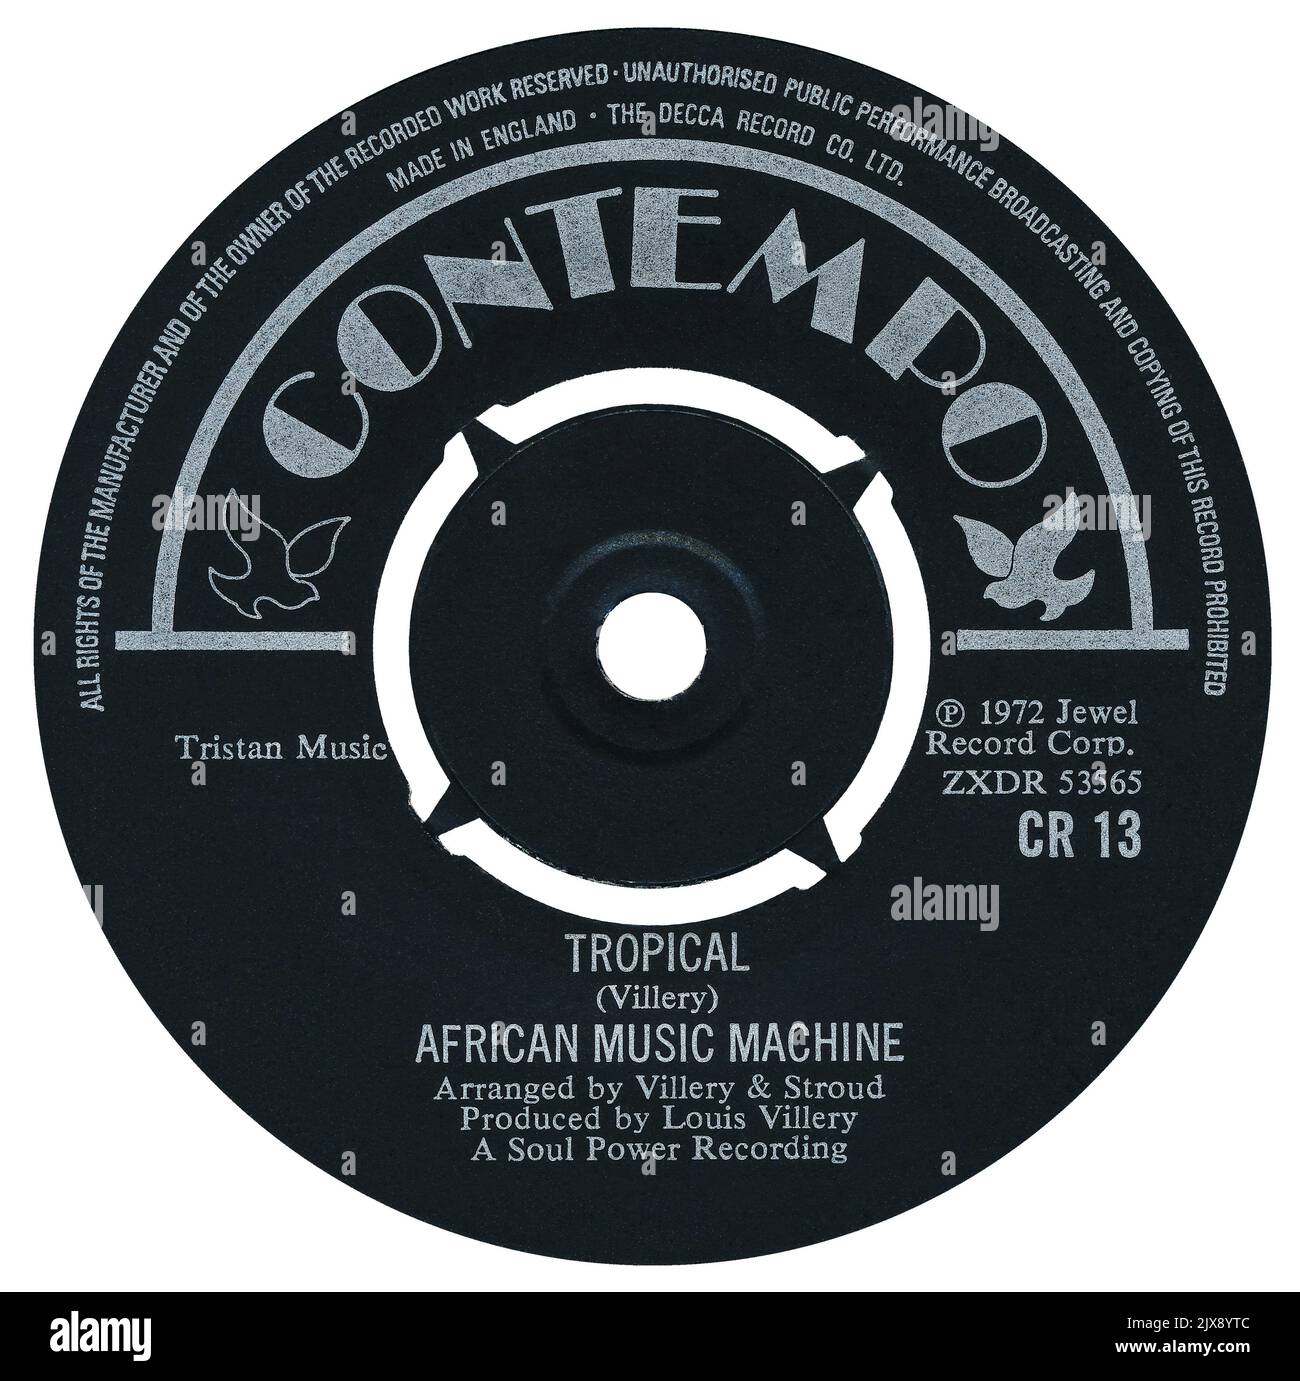 45 RPM 7' britisches Plattenlabel von Tropical von African Music Machine. Geschrieben und produziert von Louis Villery. Veröffentlicht auf dem Label Contempo im Juni 1973. Stockfoto